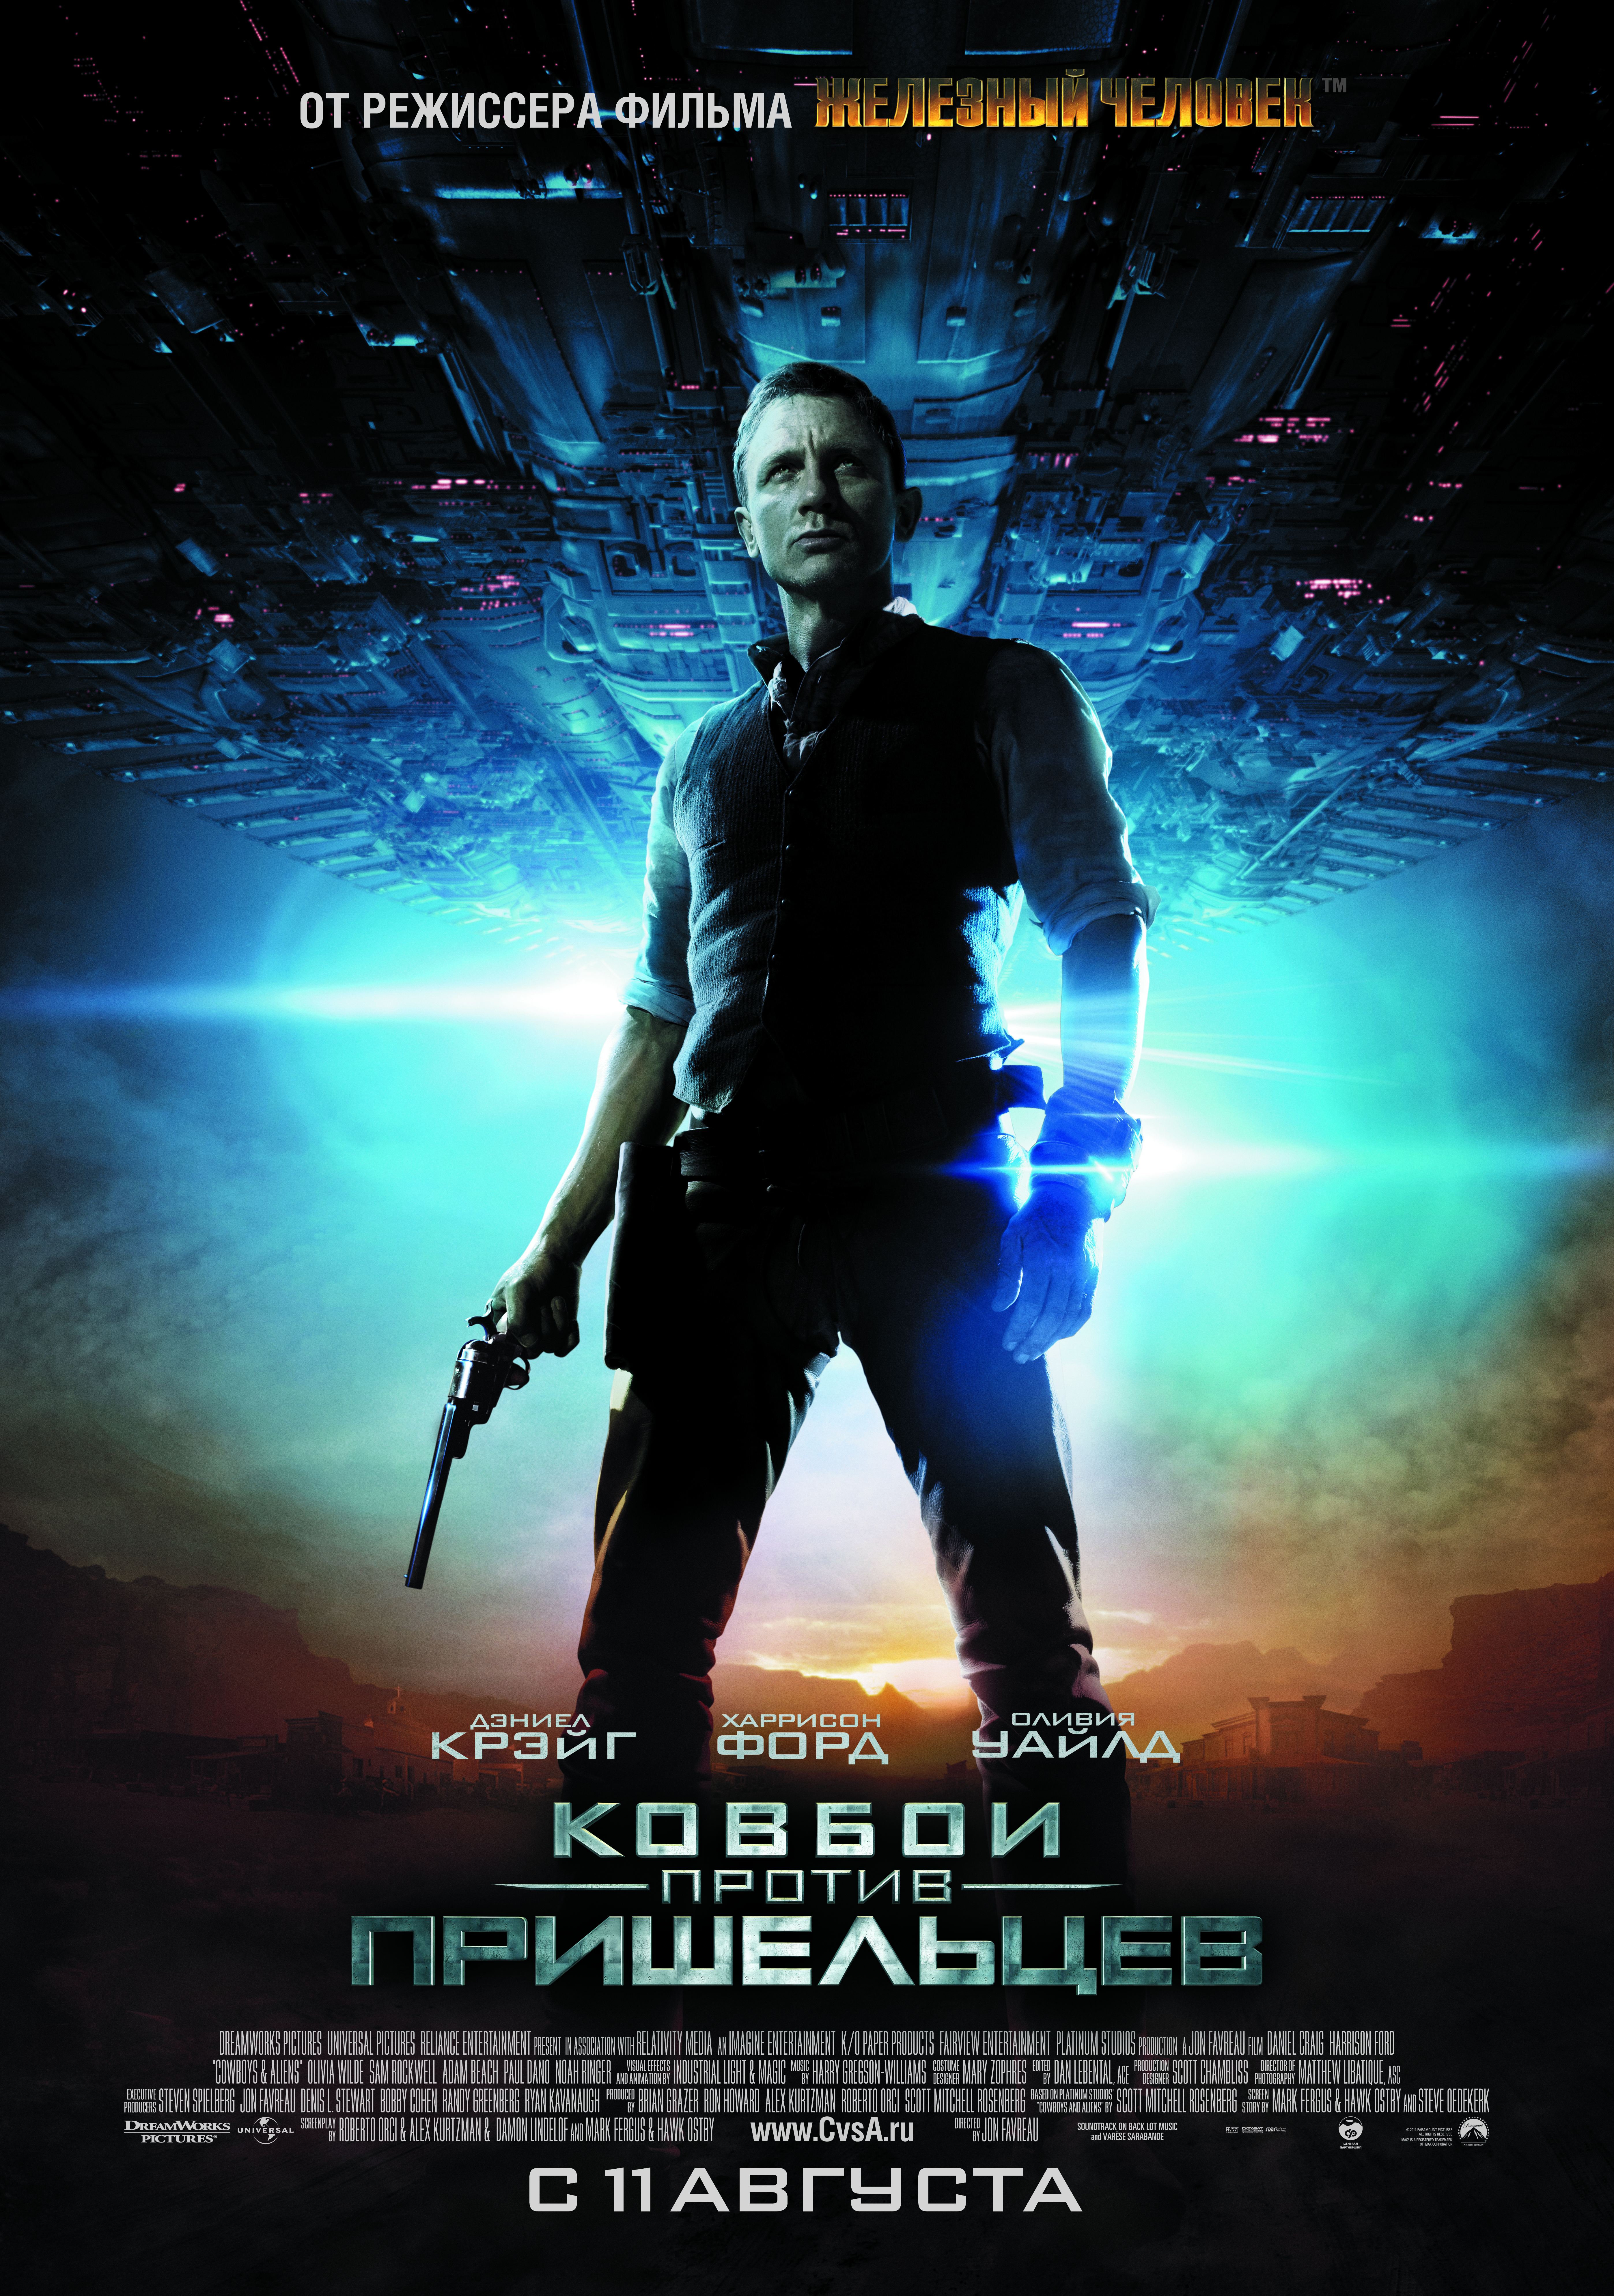 Movie fora. Ковбои против пришельцев 2011 год Постер. Постер к фильму Ковбои против пришельцев.